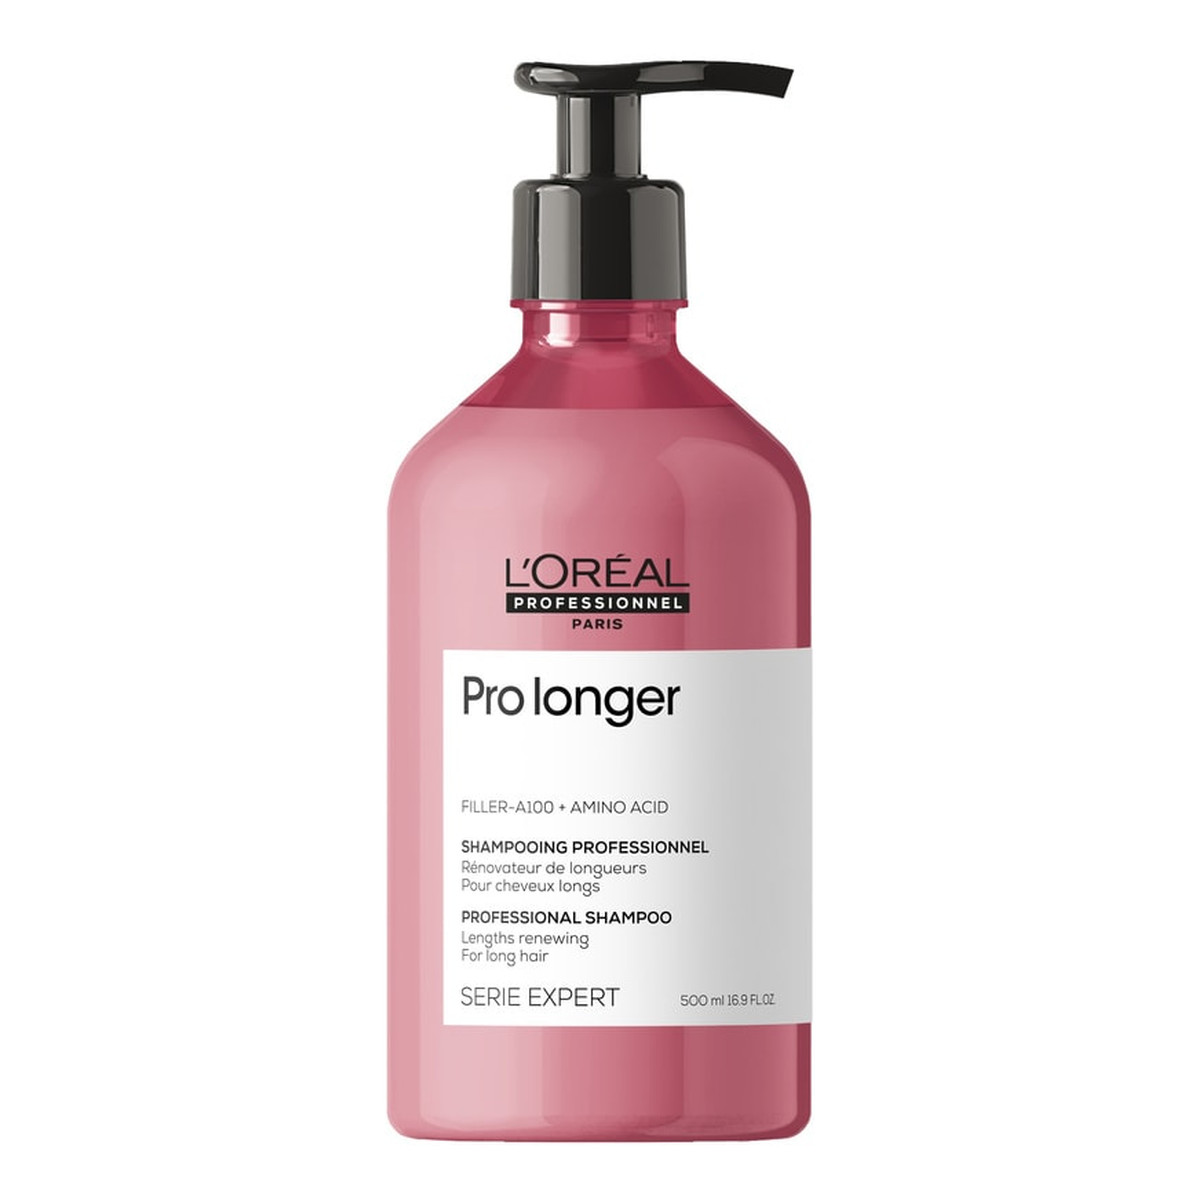 L'Oreal Paris Serie expert pro longer shampoo szampon poprawiający wygląd włosów na długościach i końcach 500ml